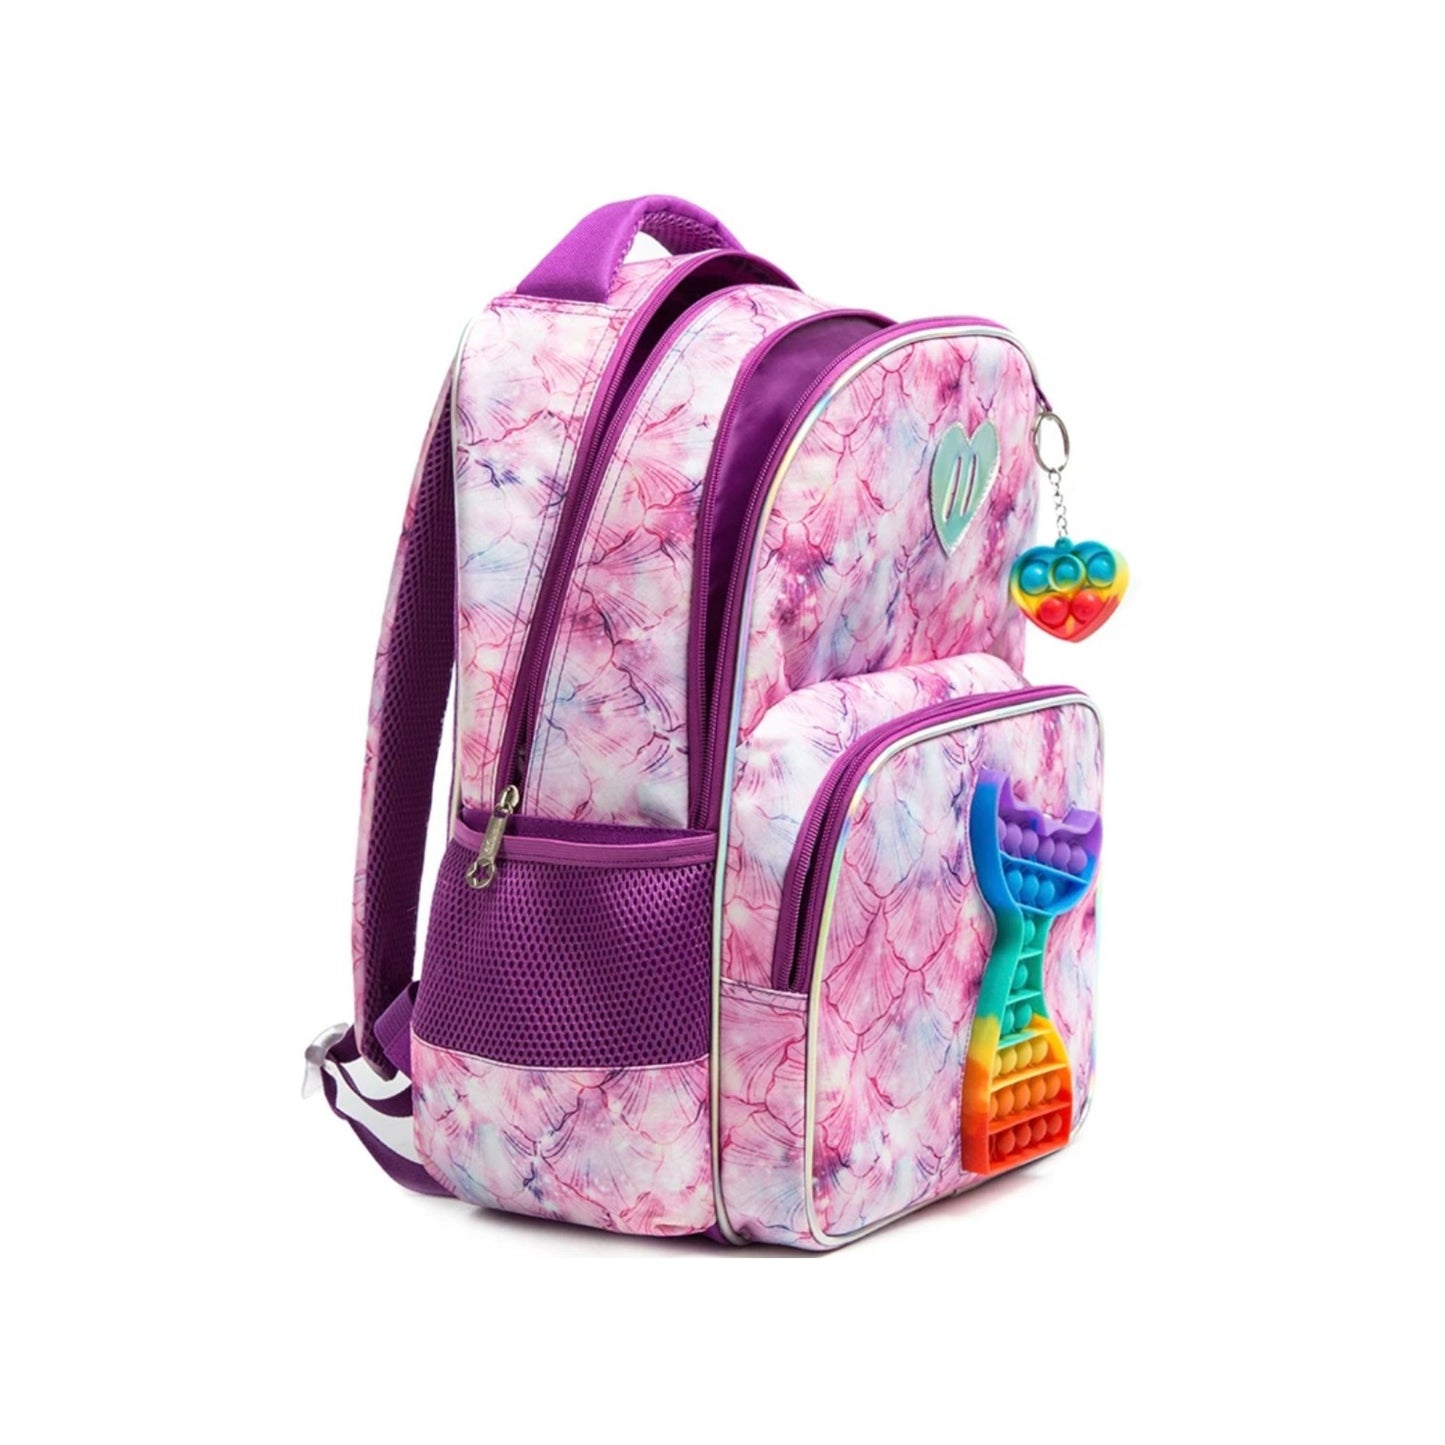 Mermaid Pop- it 3-Piece Backpack Set